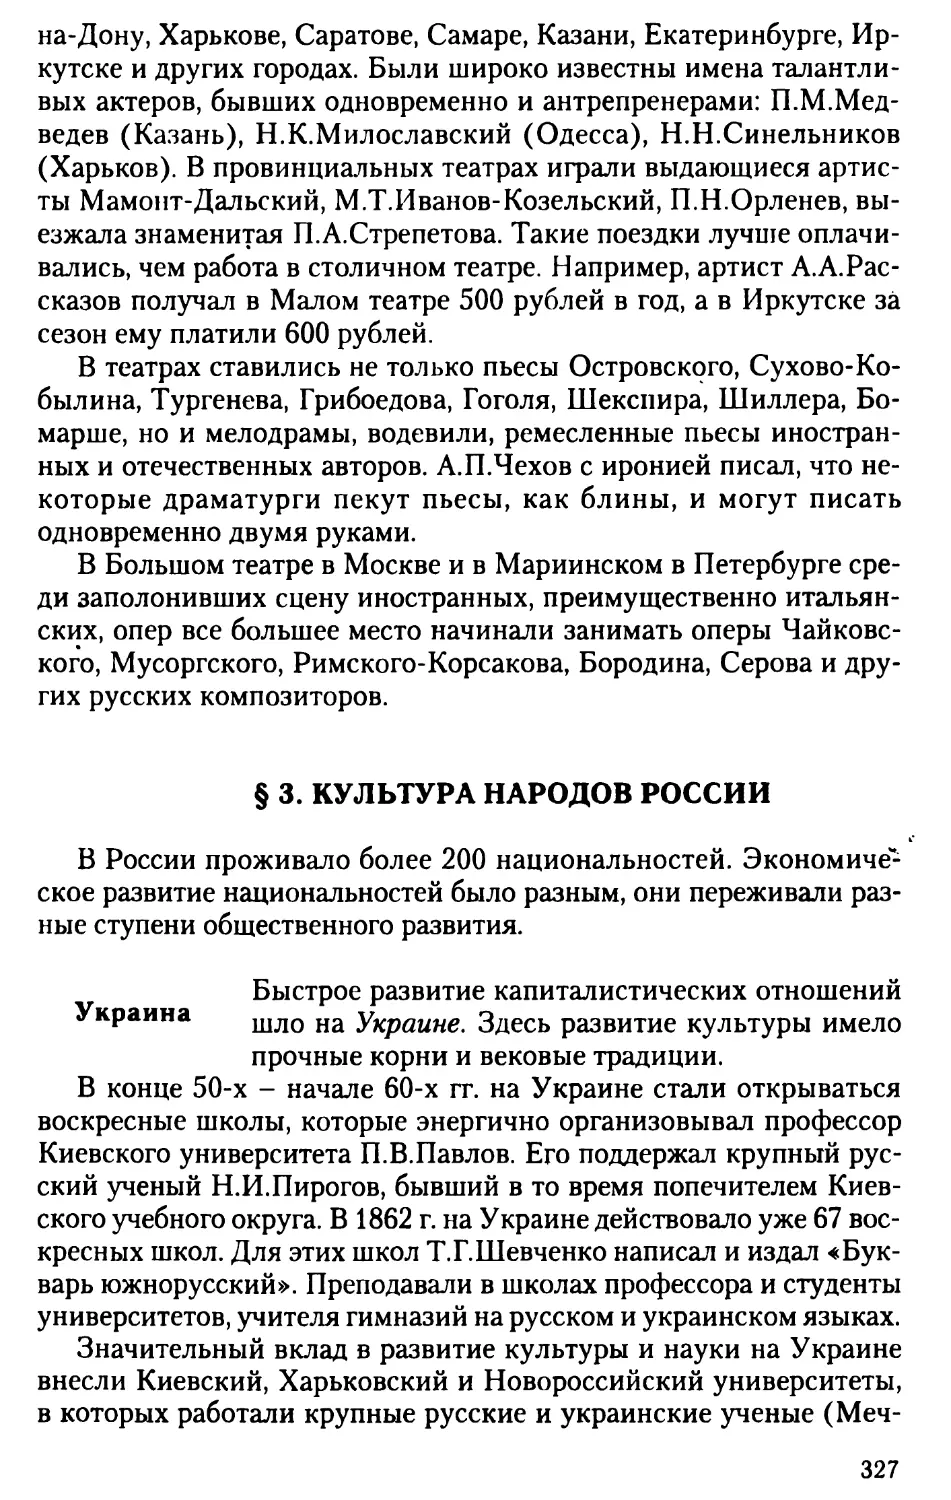 § 3. Культура народов России